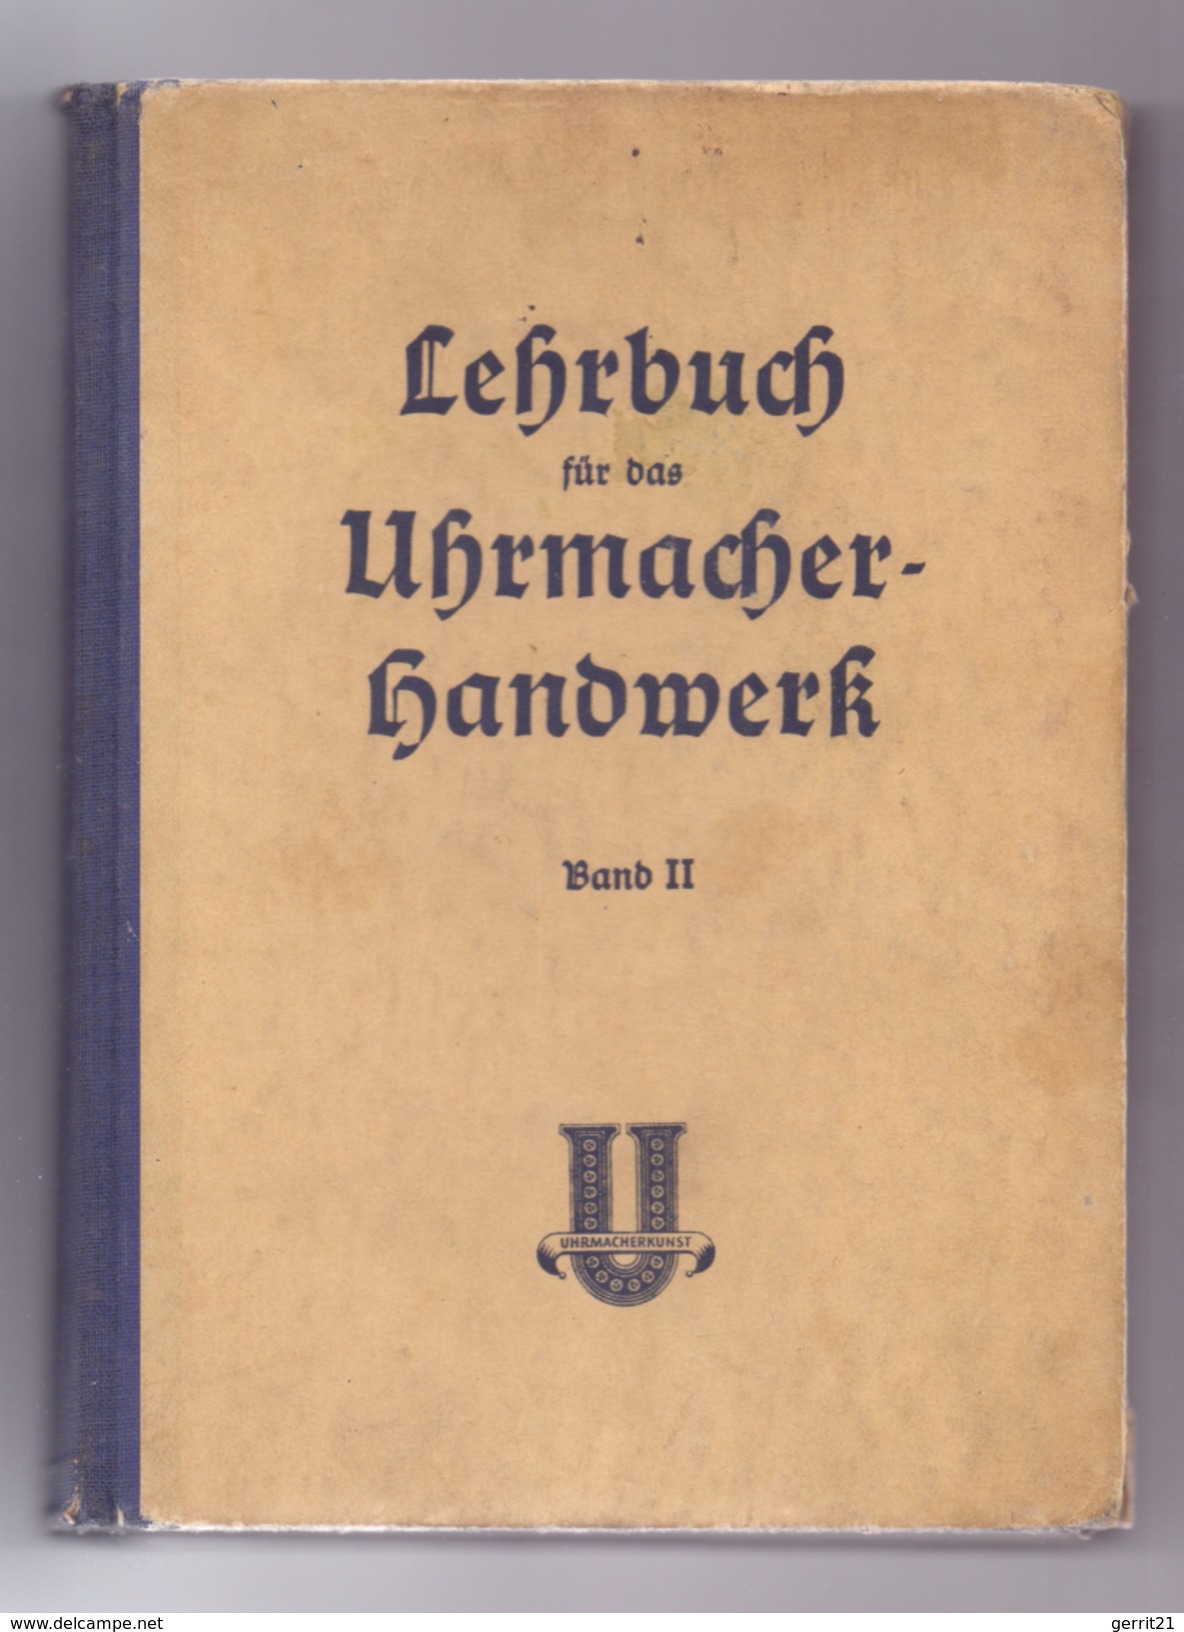 LEHRBUCH Für Das Uhrmacher-Handwerk, Band II,Verlag Knapp, Düsseld., 1951, 424 Seiten, 350 Abb., Einband Gebrauchsspuren - Técnico